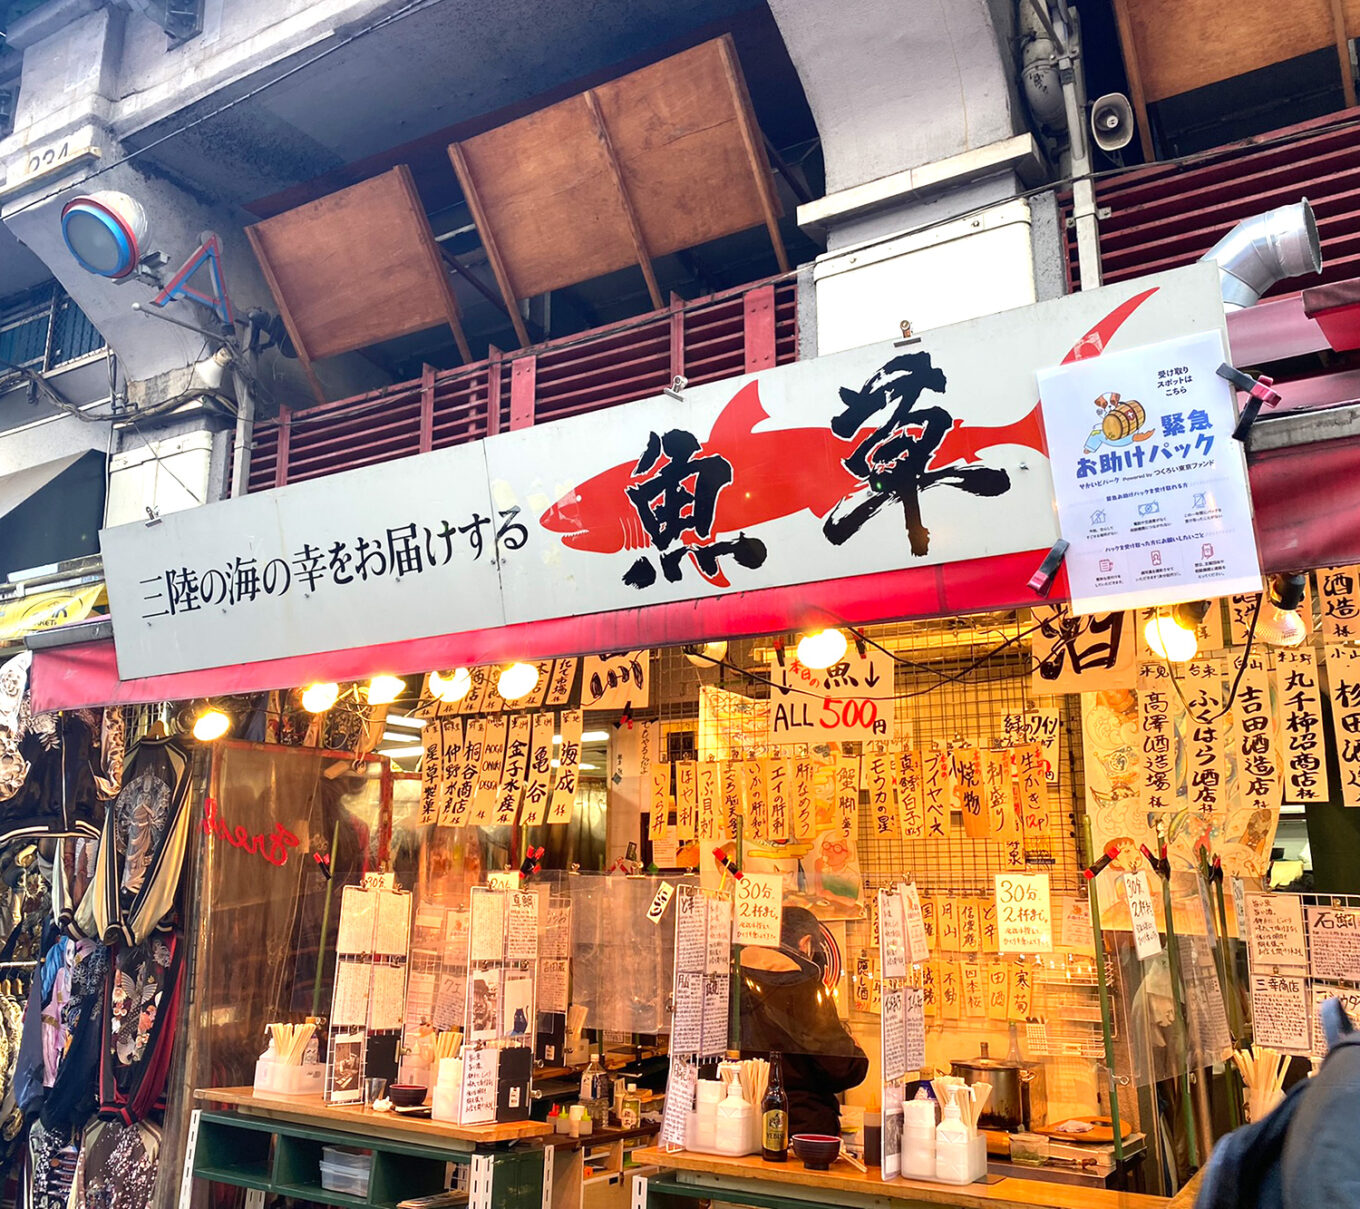 上野 魚草 ワンコインのいくら丼に舌鼓 アメ横で一人飲みにおすすめの魚屋さんの立ち飲み せんべろnet